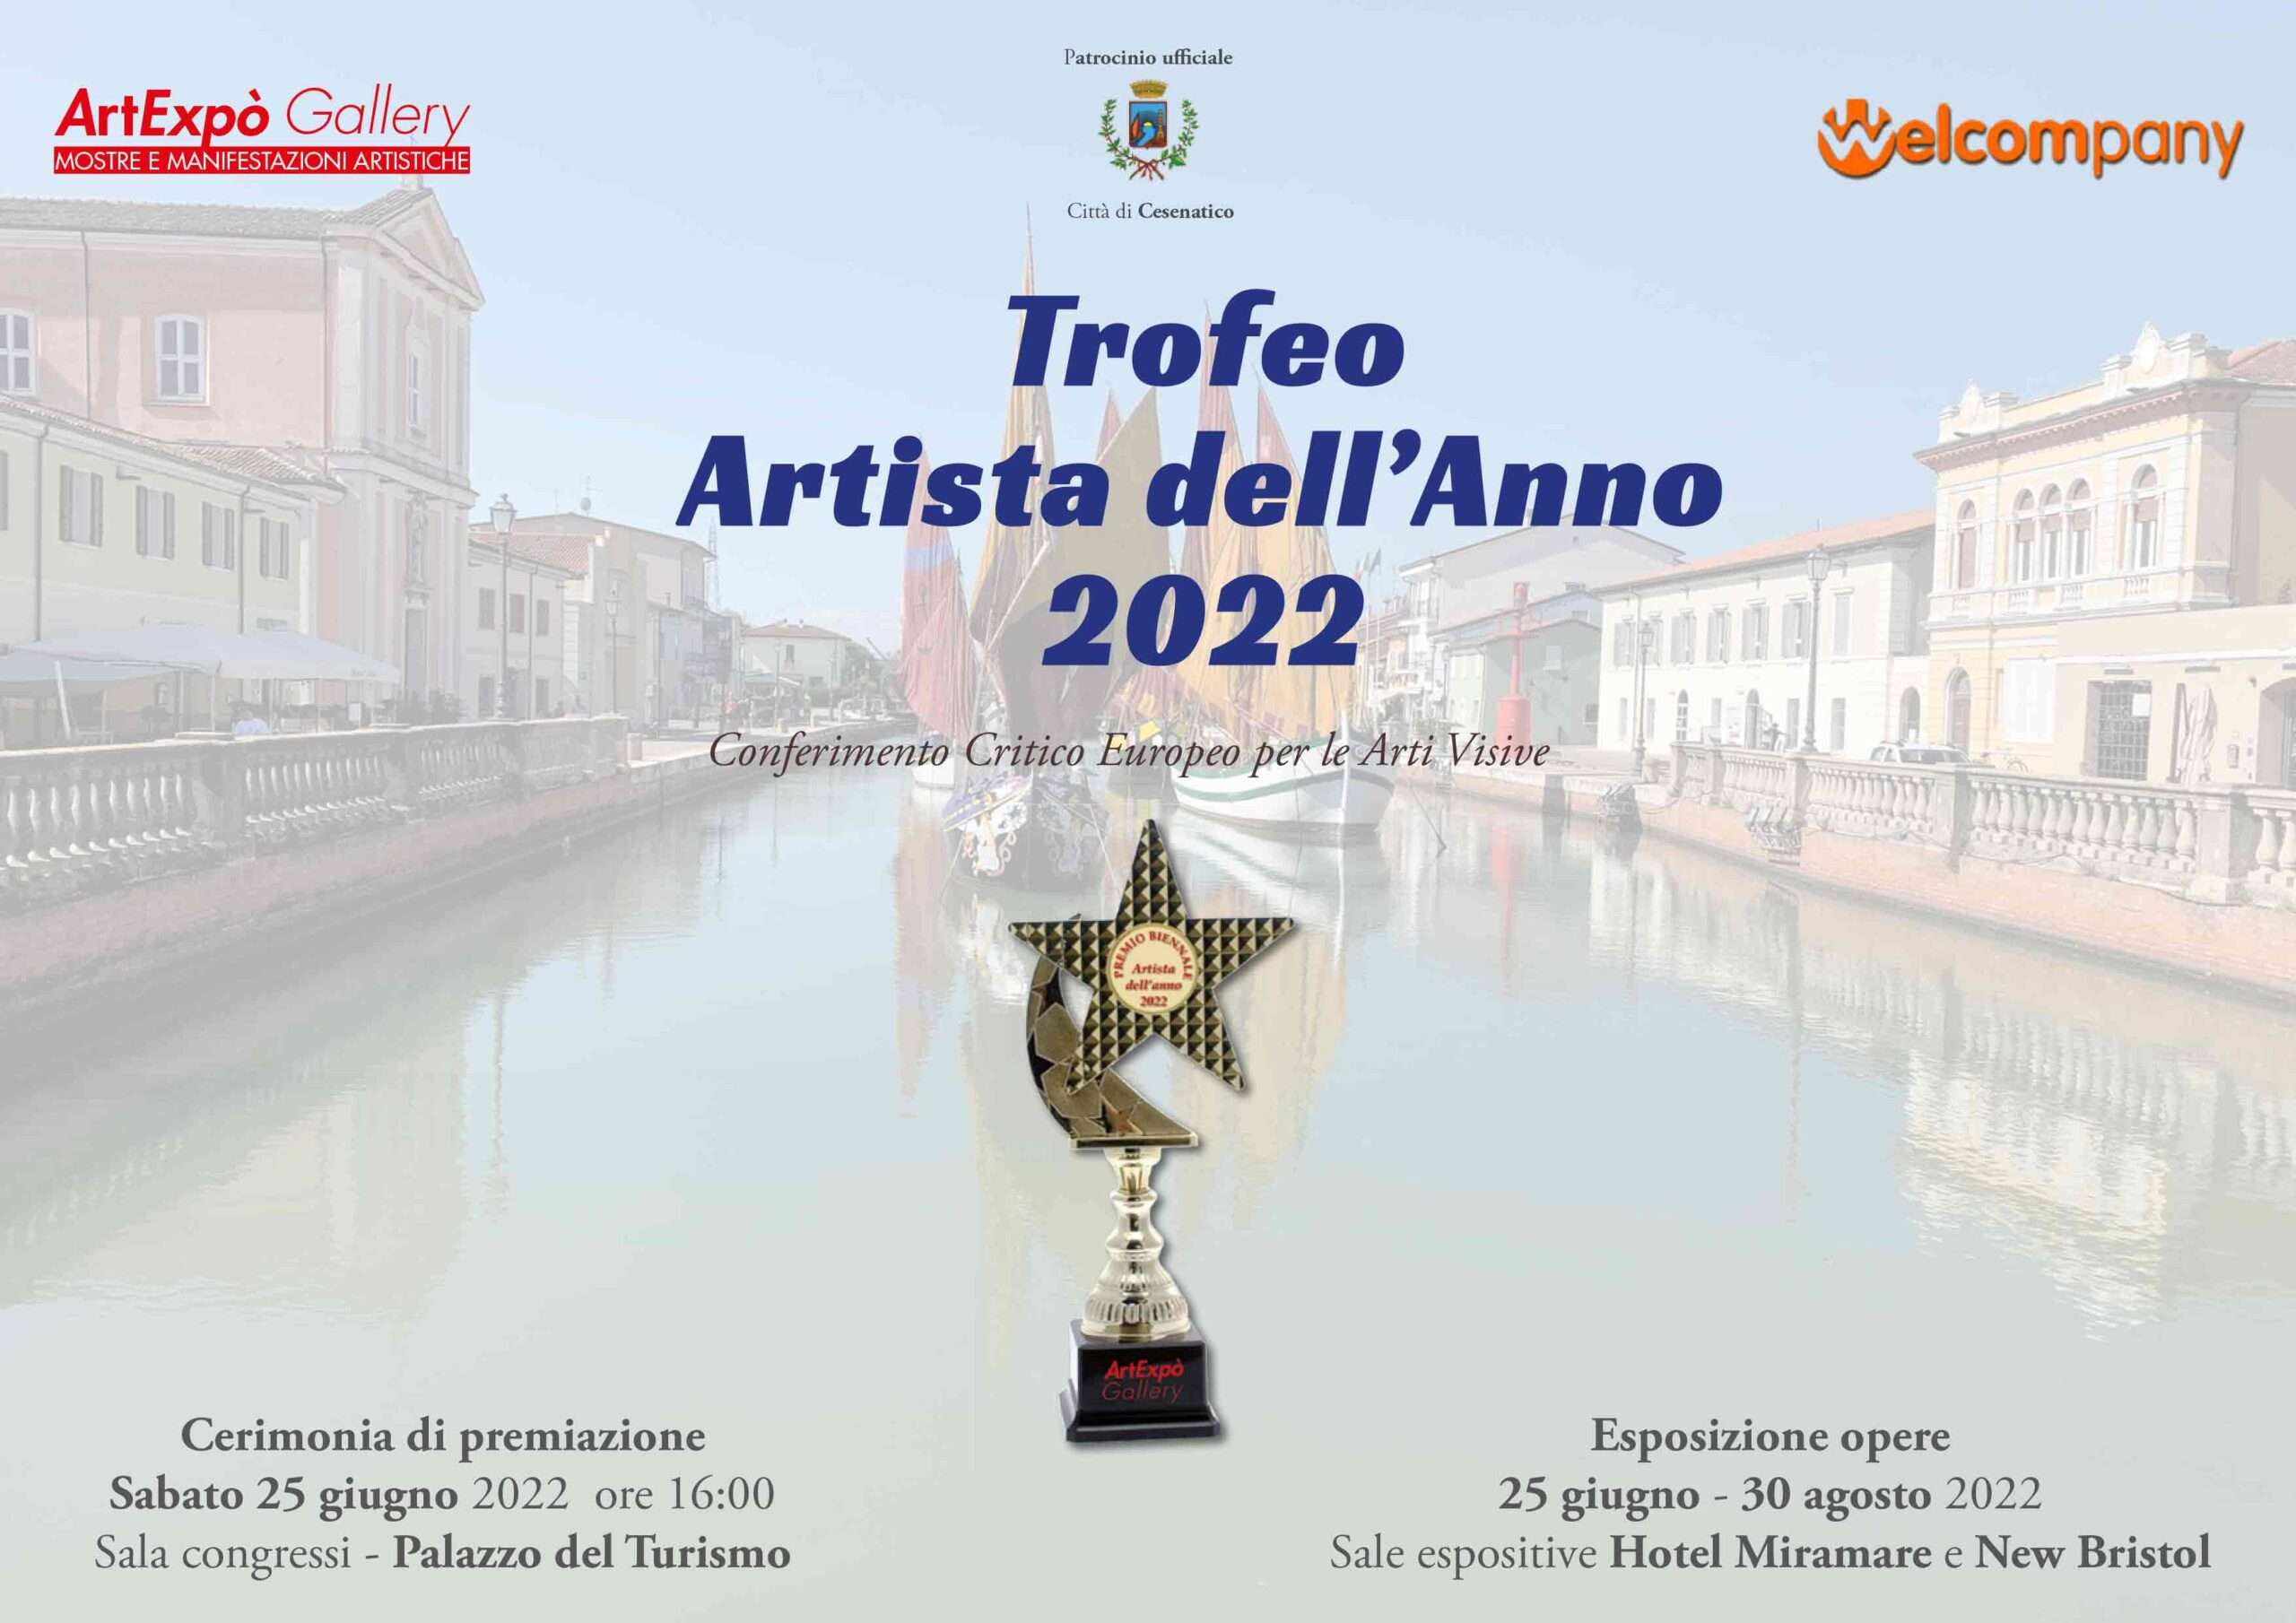 Trofeo “Artista dell’Anno” 2022